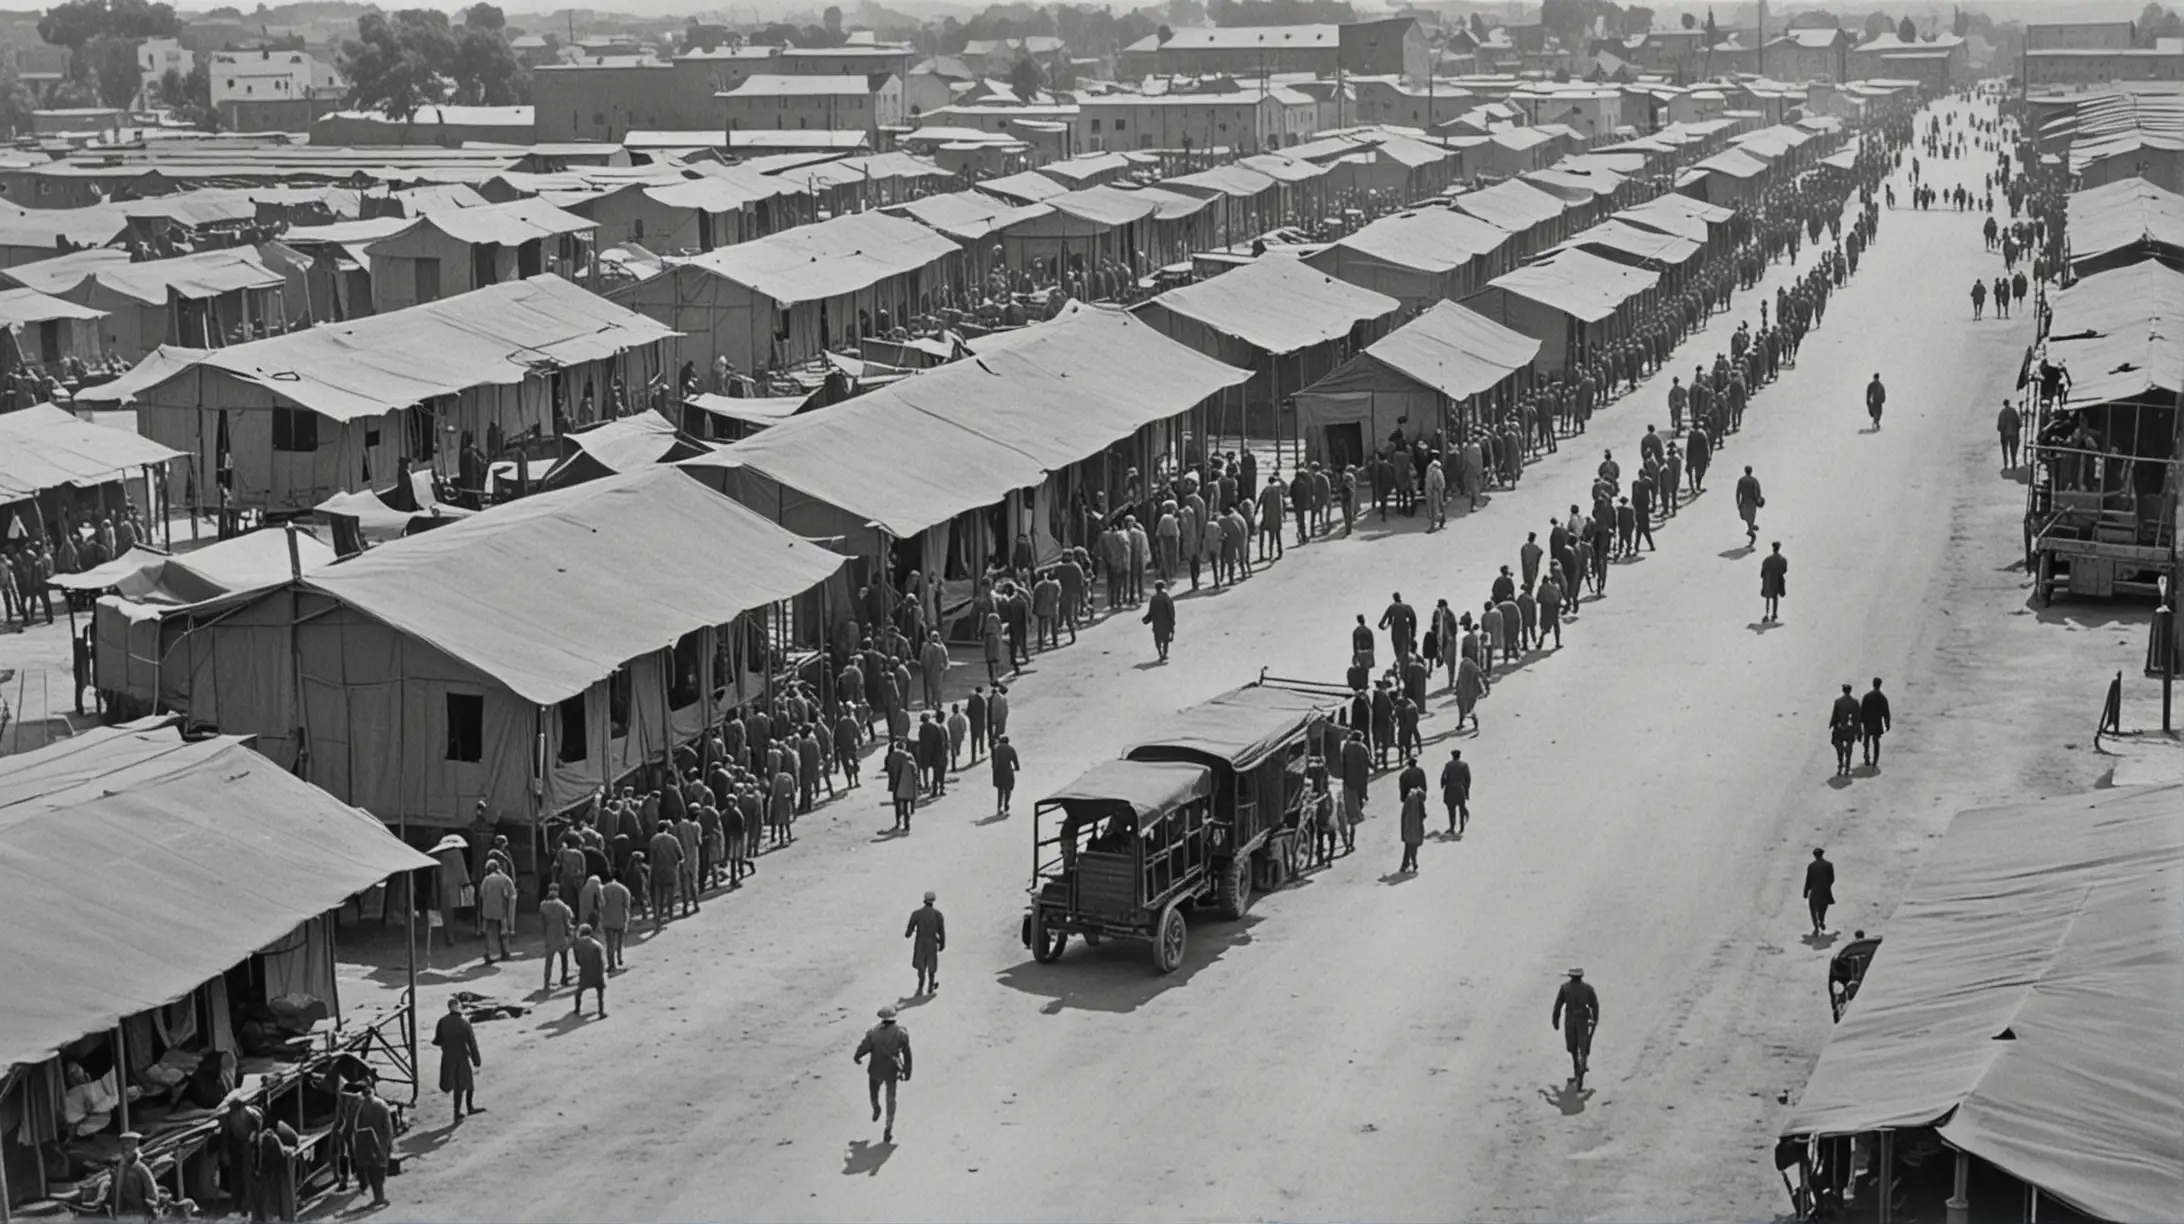 1910, een militair kamp met rijen strakke barakken, mensen lopen in de straten tussen de barakken, oude vrachtwagens, high angle, zwartwit tekening